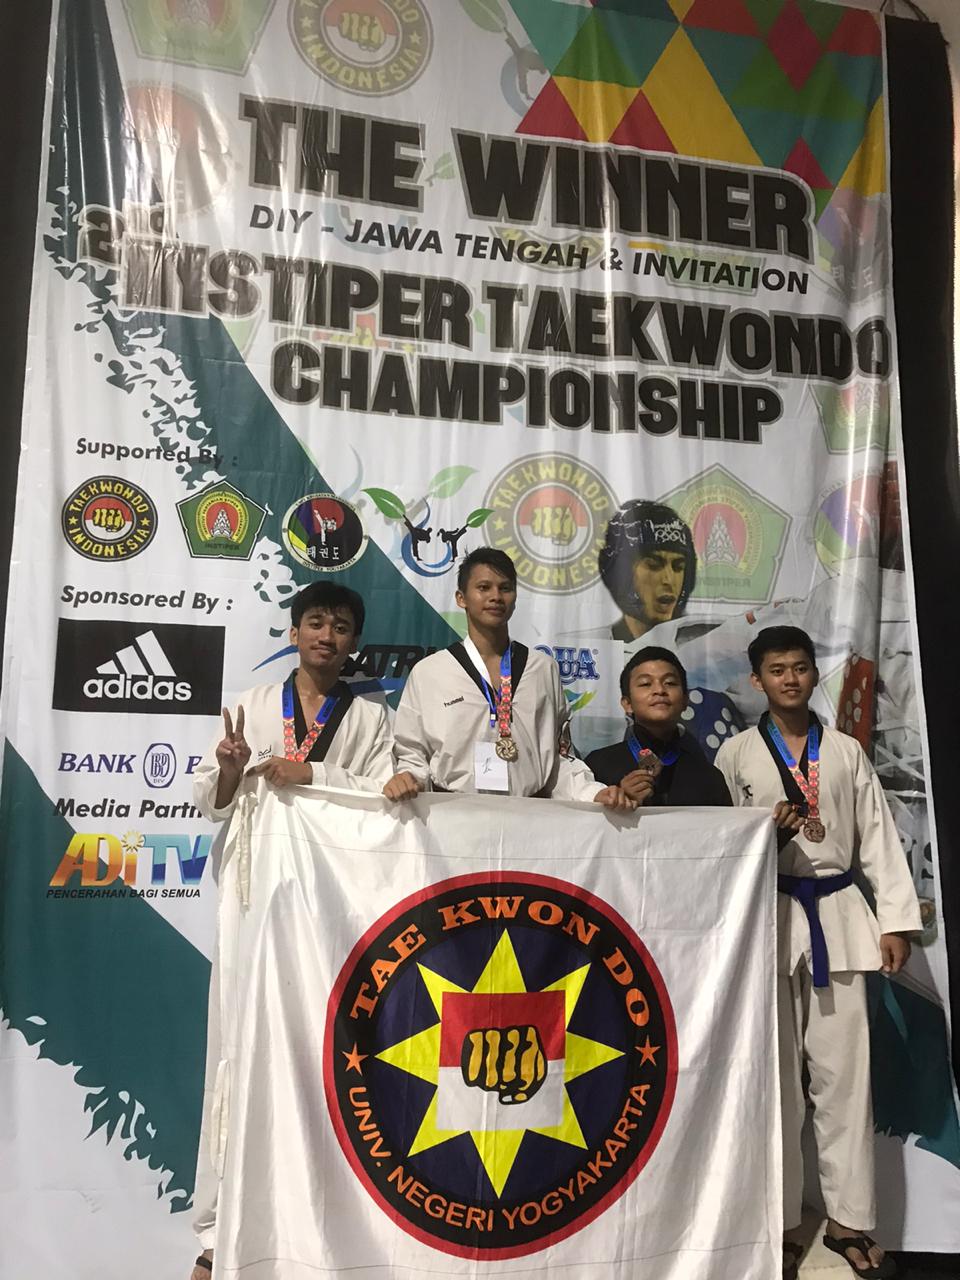 Foto 2nd Instiper Taekwondo Champhionship DIY Jawa Tengah 2020